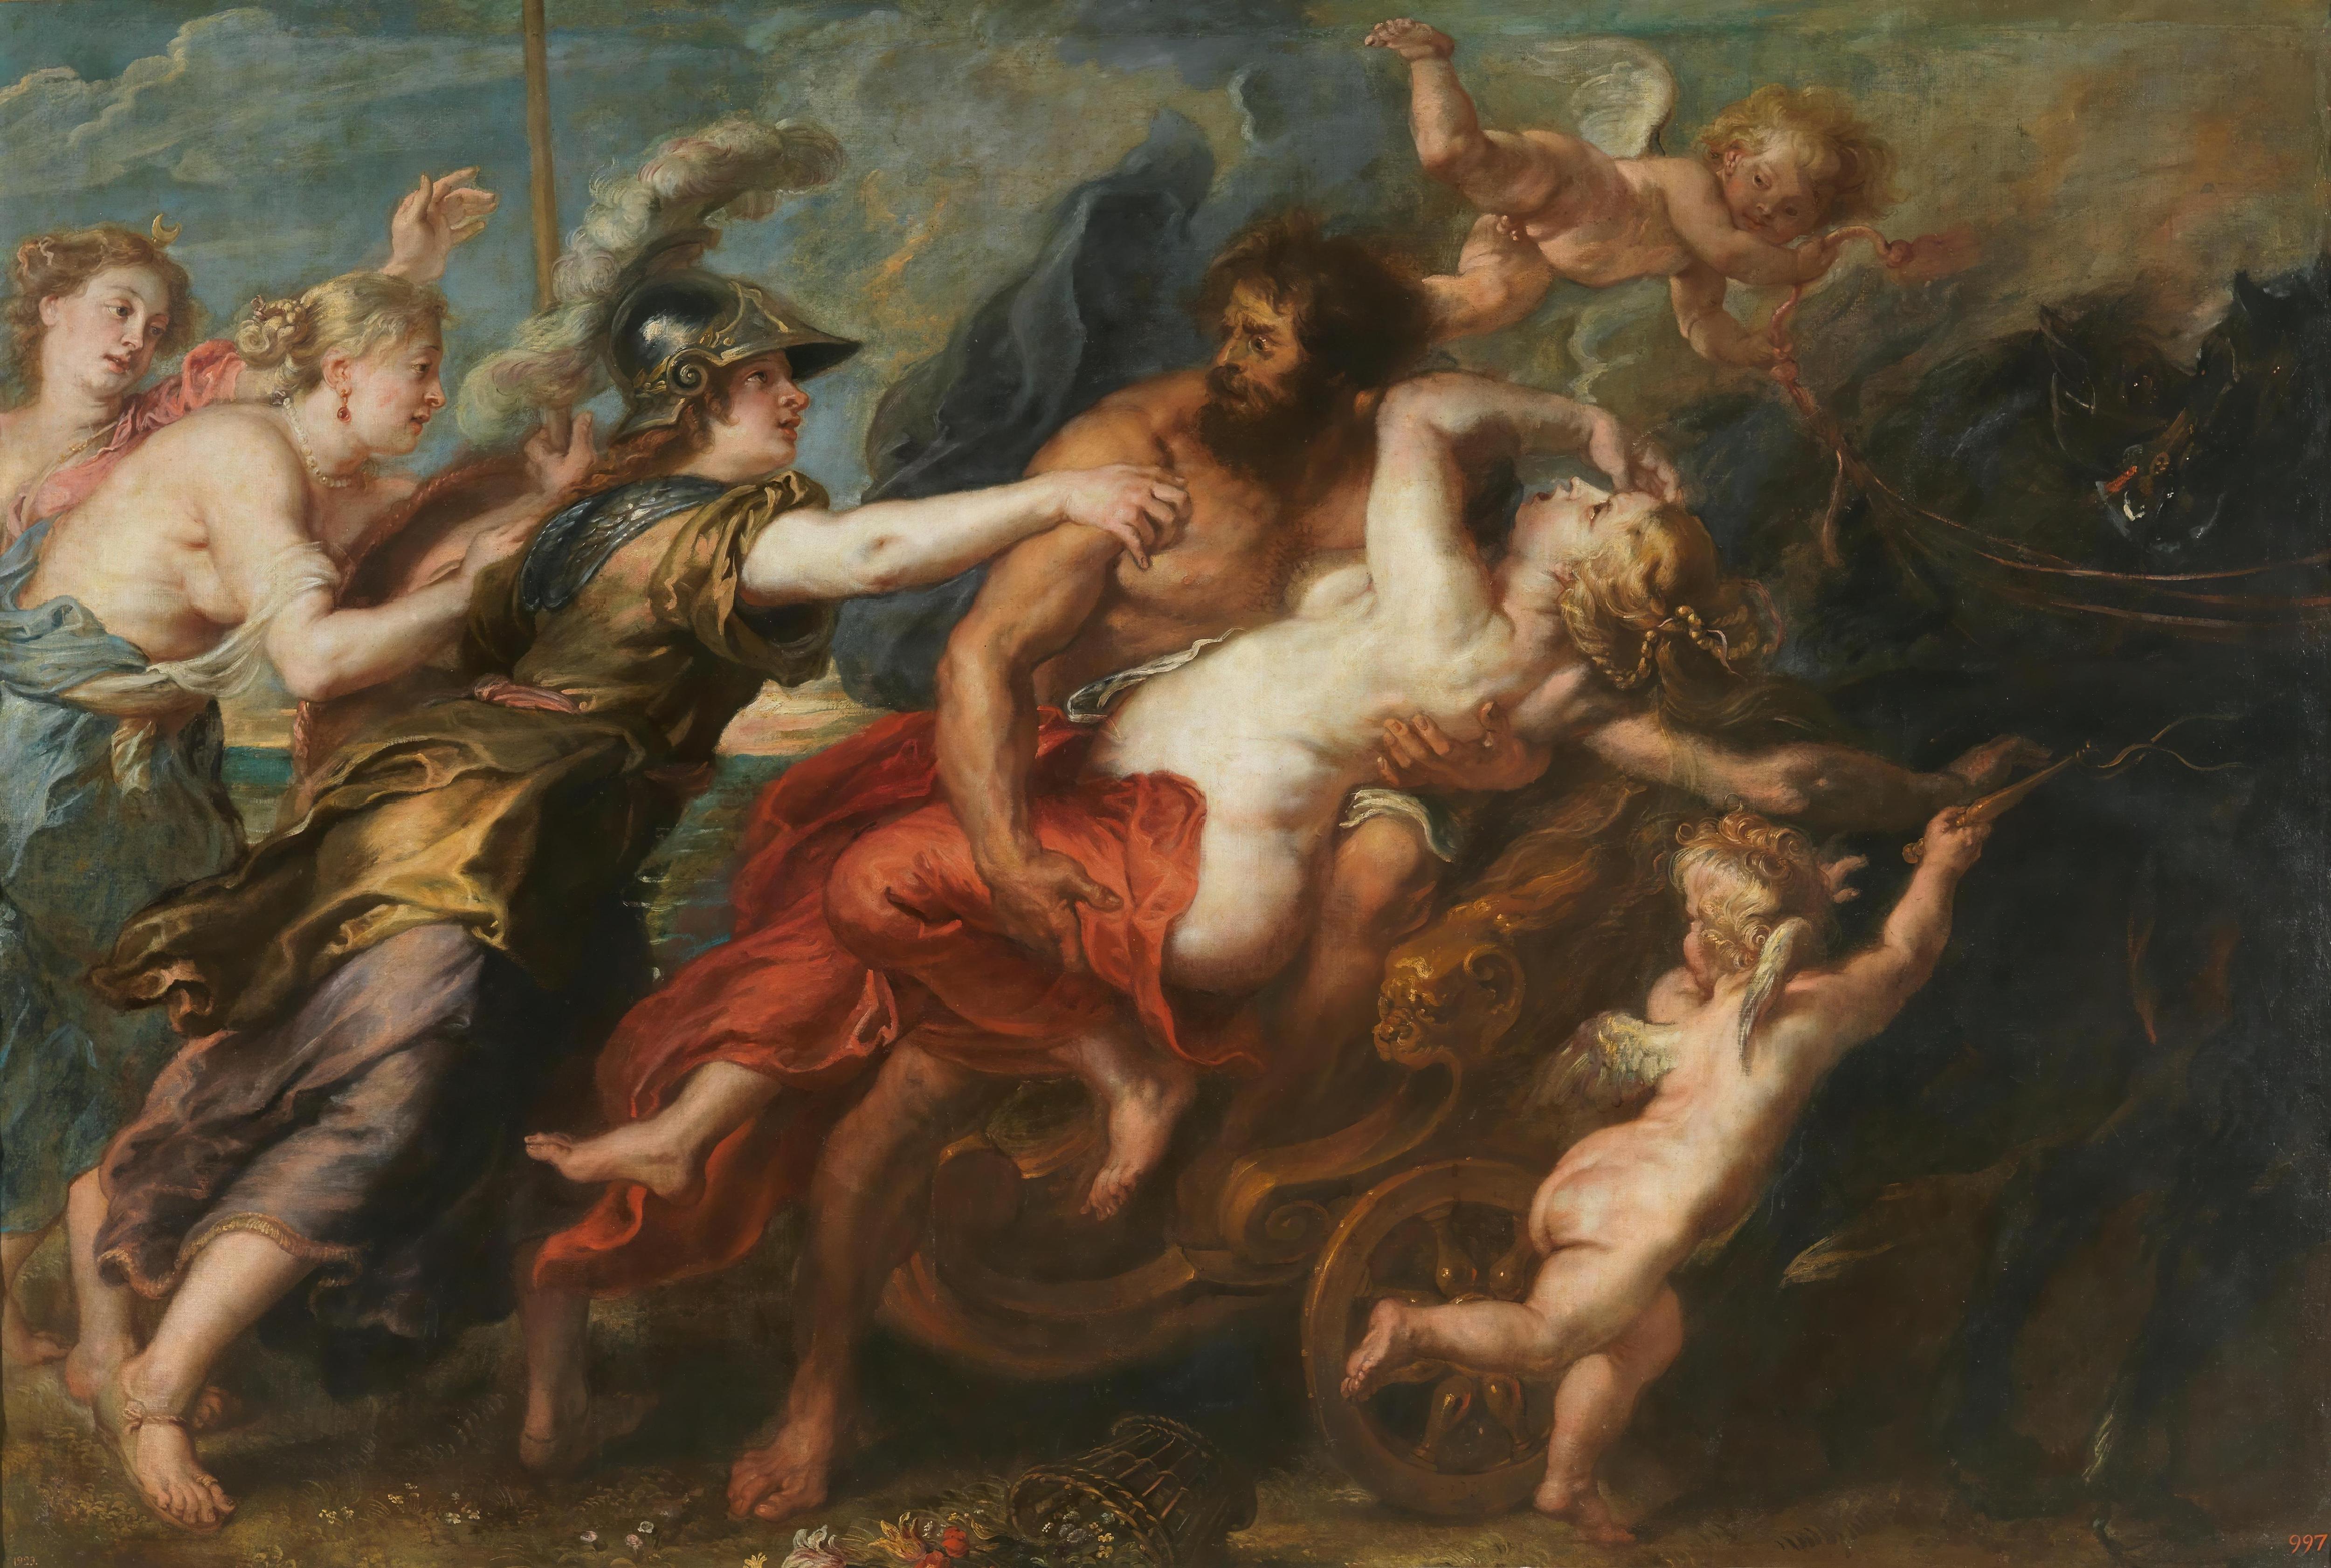 Греческие боги связали мулаточку и заставили сосать смотреть порно онлайн